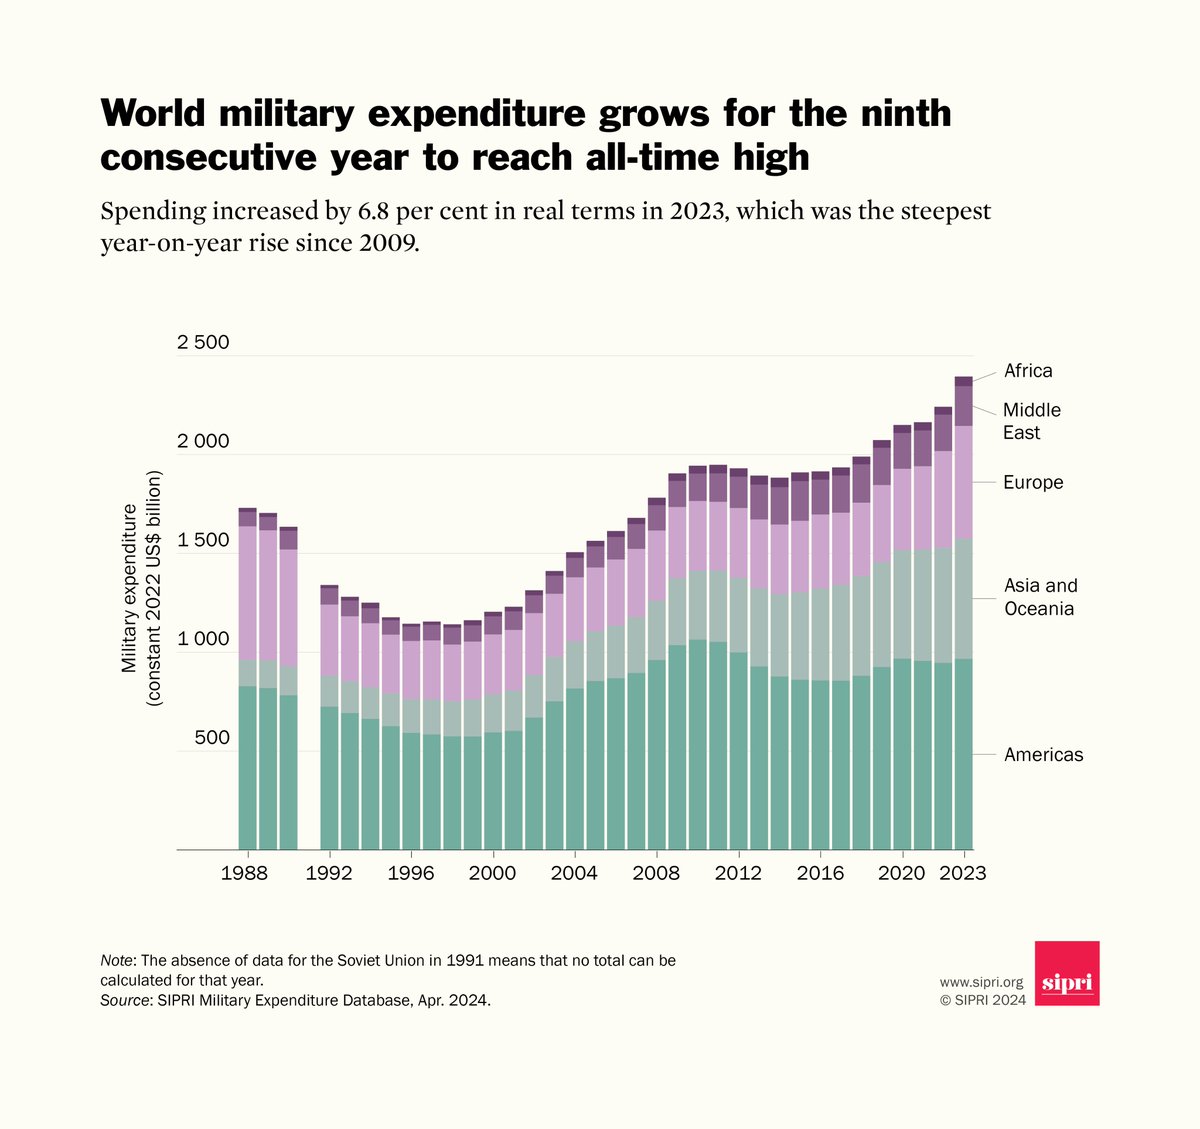 2443 Milliarden $ wurden 2023 global für Militär ausgegeben. 6,8 % mehr als 2022 – der höchste jährliche Anstieg seit 2009. Top: USA (37 %), CHN (12 %), RF (4,5 %). Jede Erdenbürger*in gibt jährlich statistisch 306 $ für Militär aus. @SIPRIorg-Daten unter sipri.org/media/press-re…